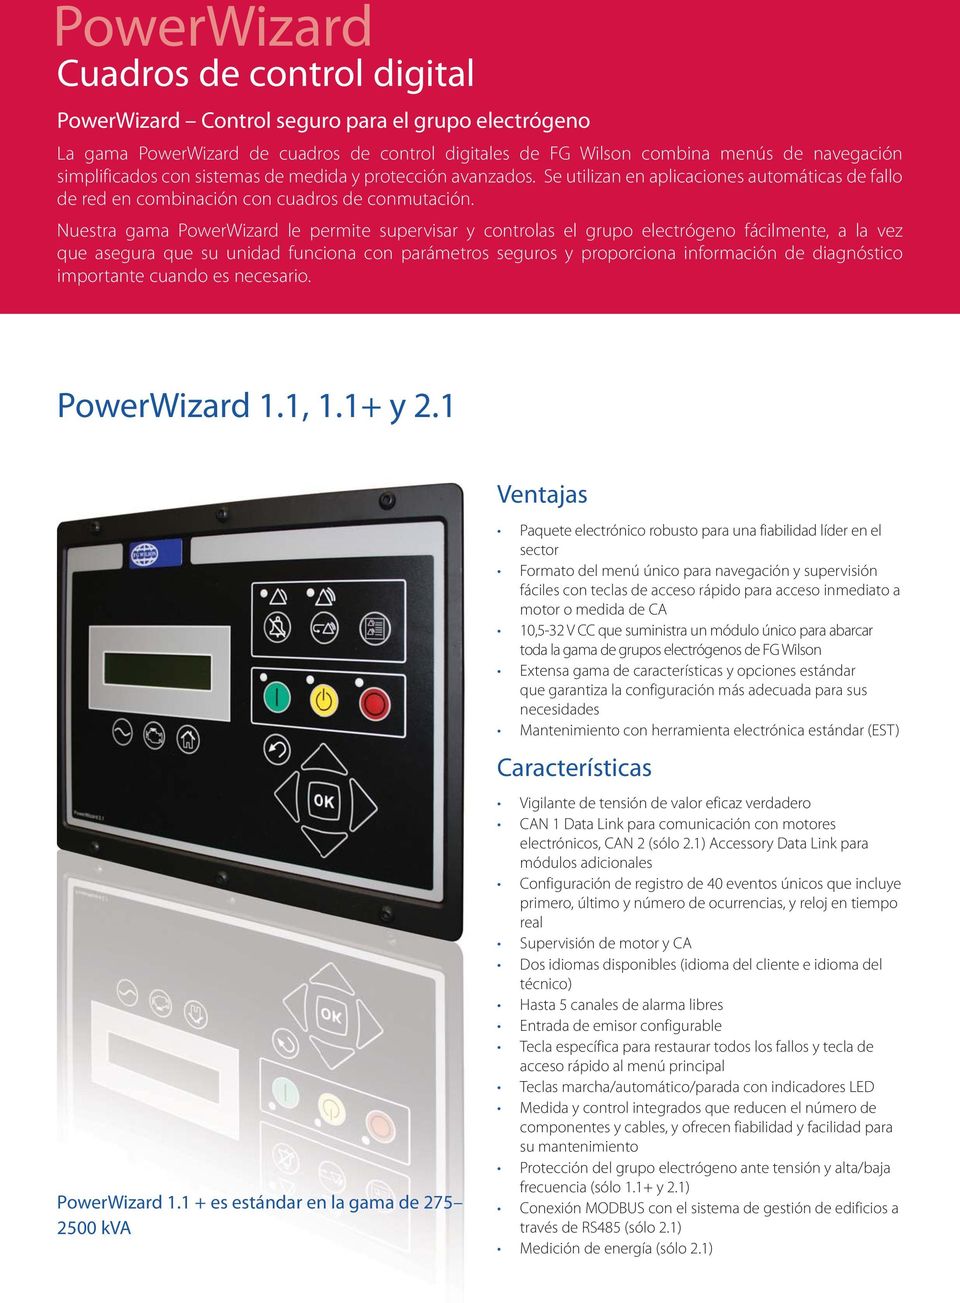 Nuestra gama PowerWizard le permite supervisar y controlas el grupo electrógeno fácilmente, a la vez que asegura que su unidad funciona con parámetros seguros y proporciona información de diagnóstico